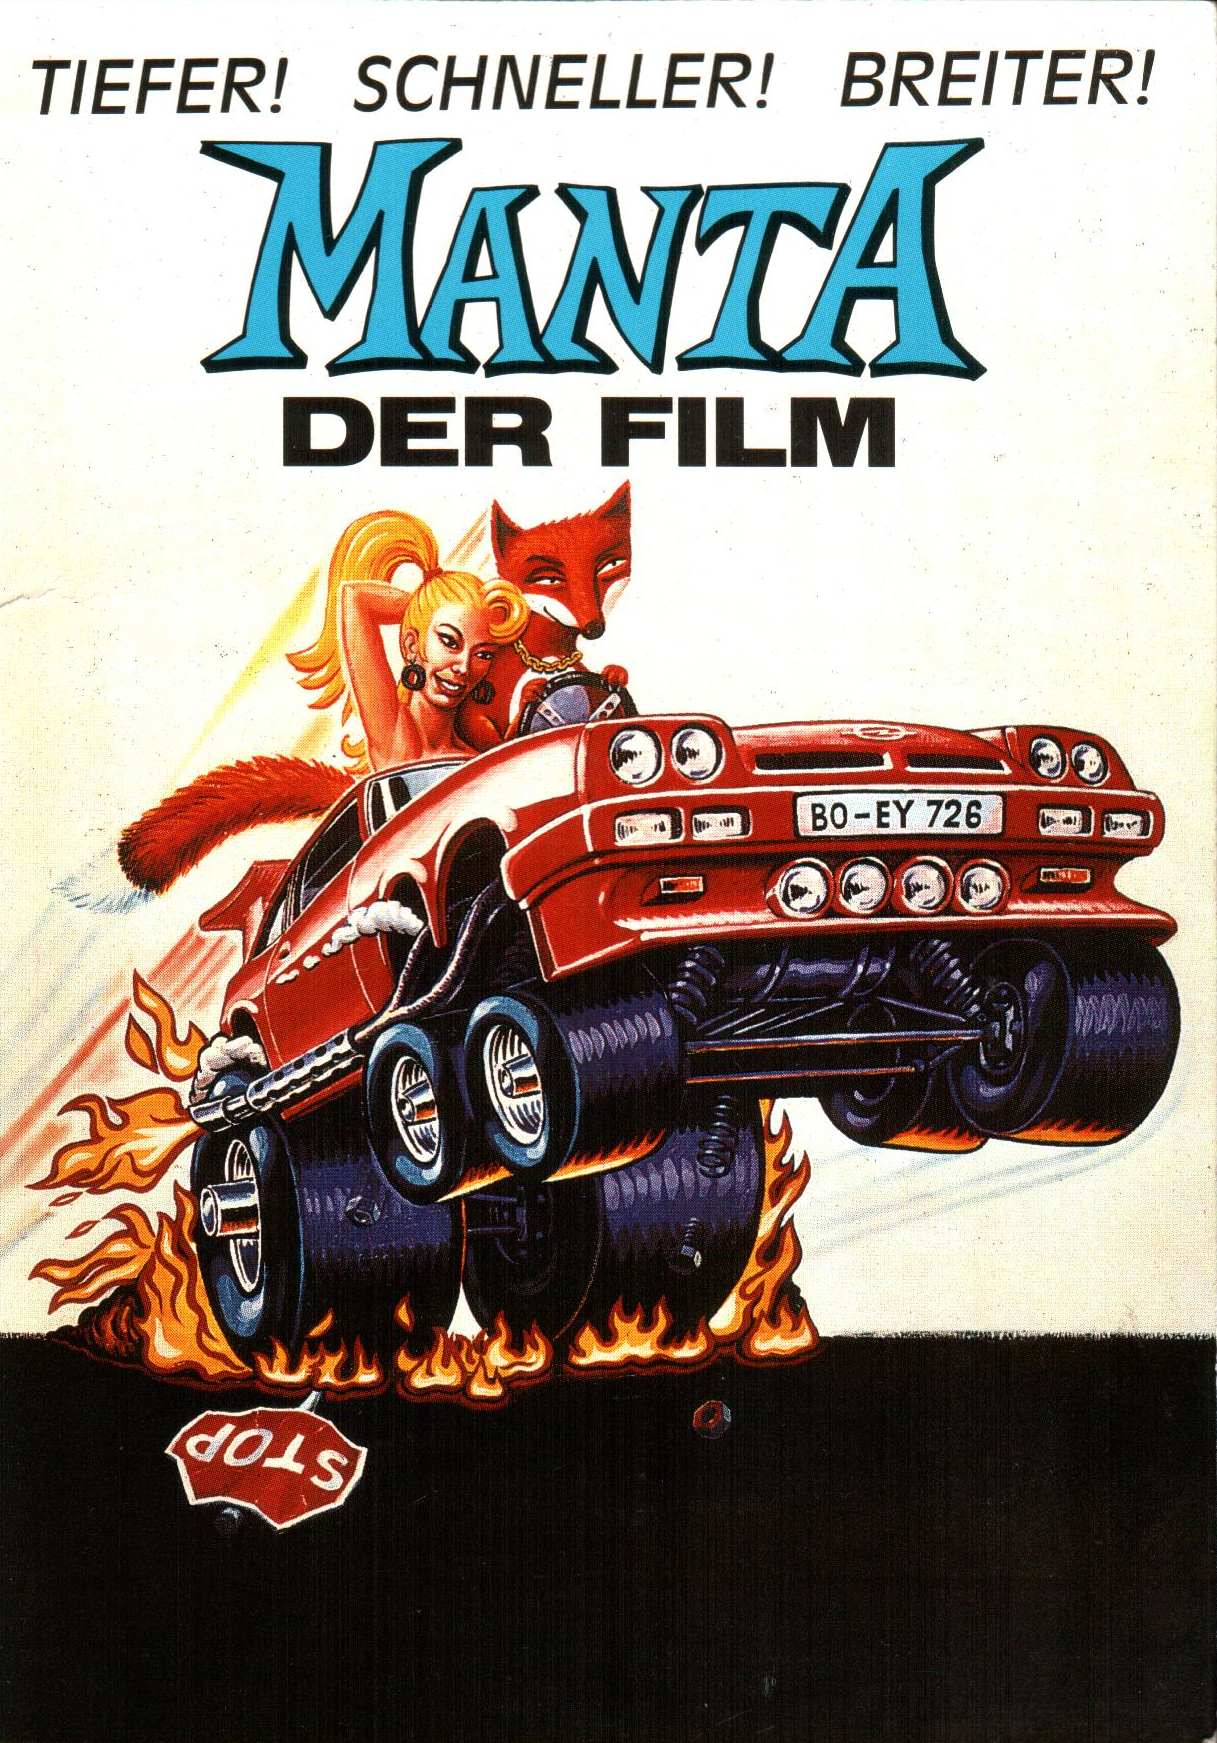 Manta der FilmManta der FilmManta der FilmManta der Film